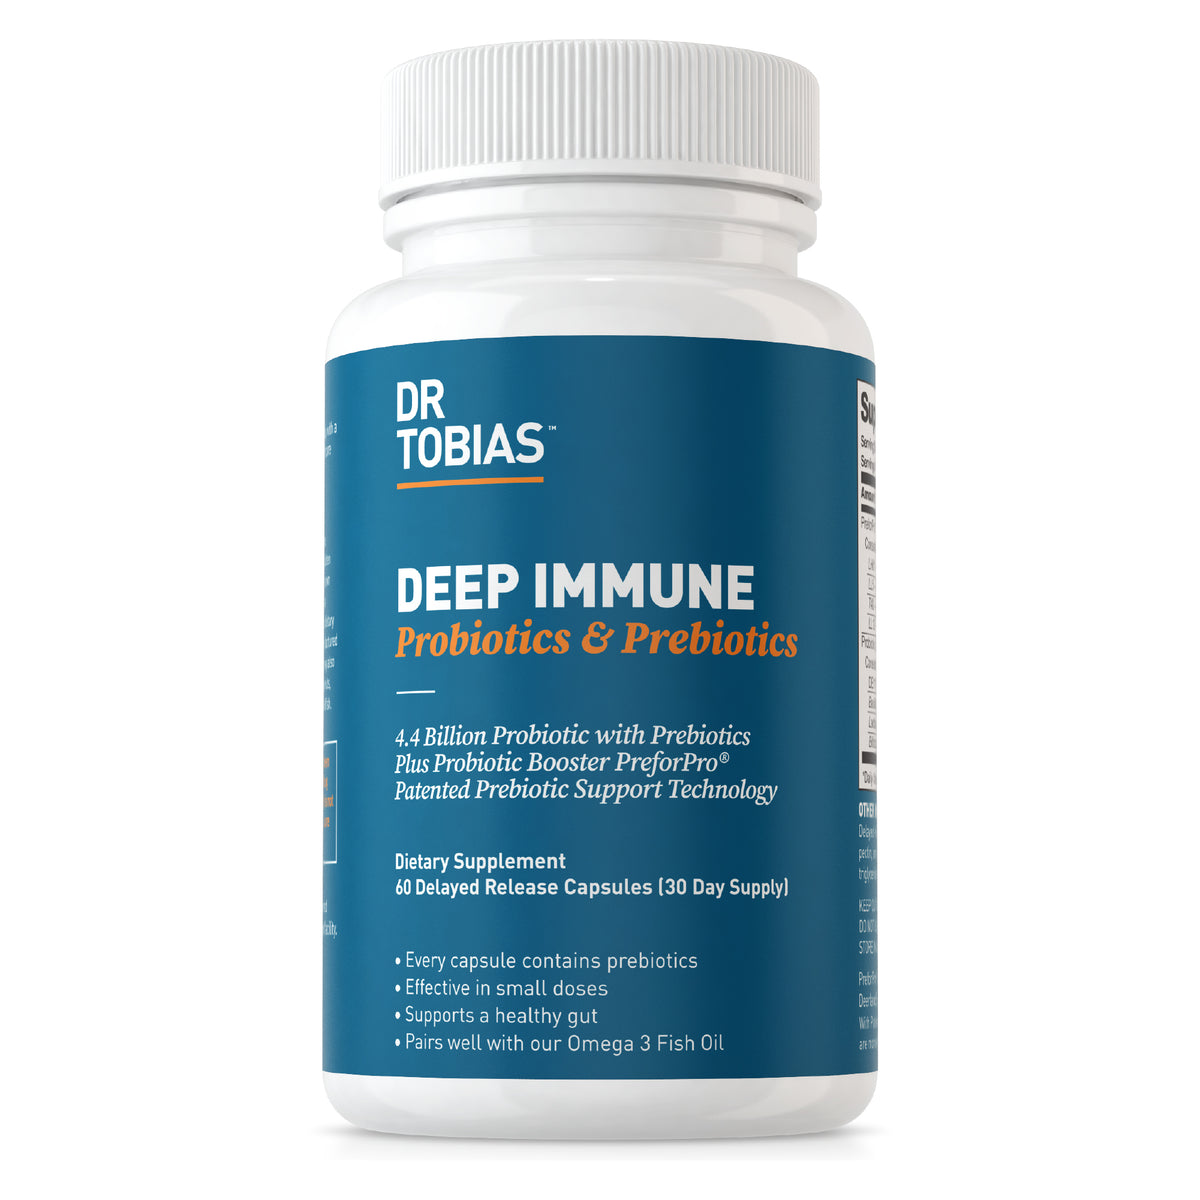 Deep Immune Probiotics & Prebiotics